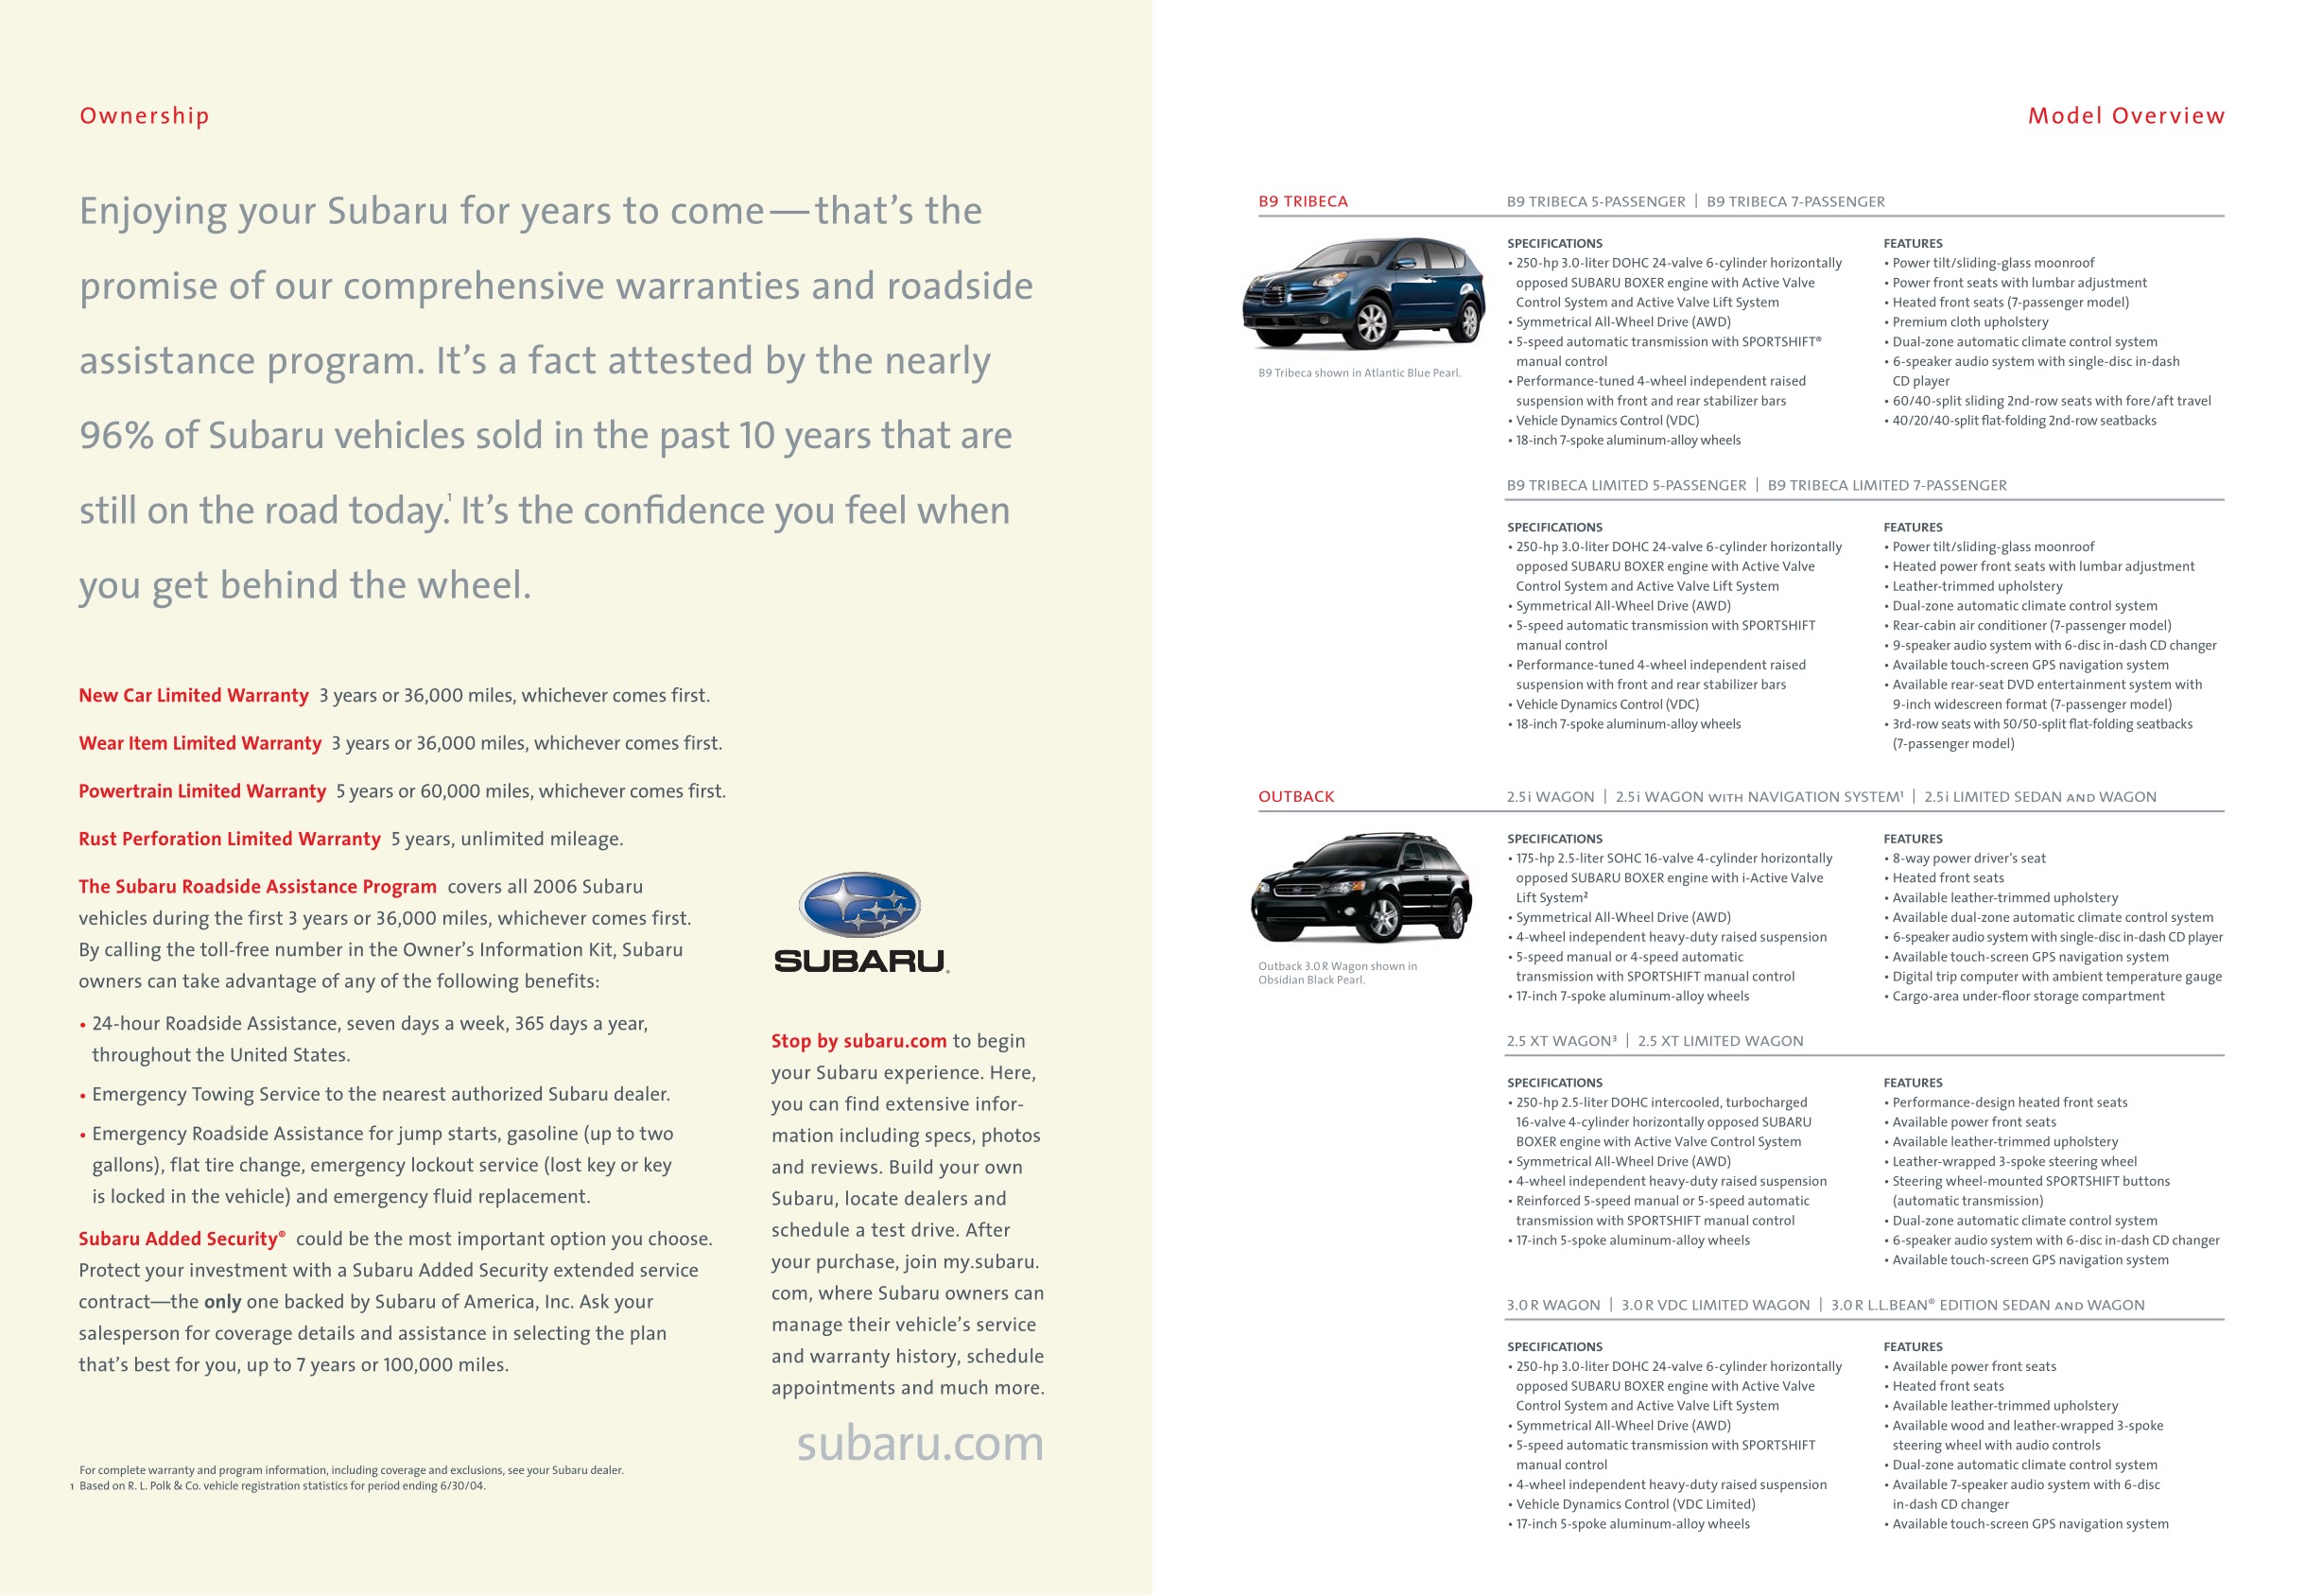 2006 Subaru Brochure Page 6